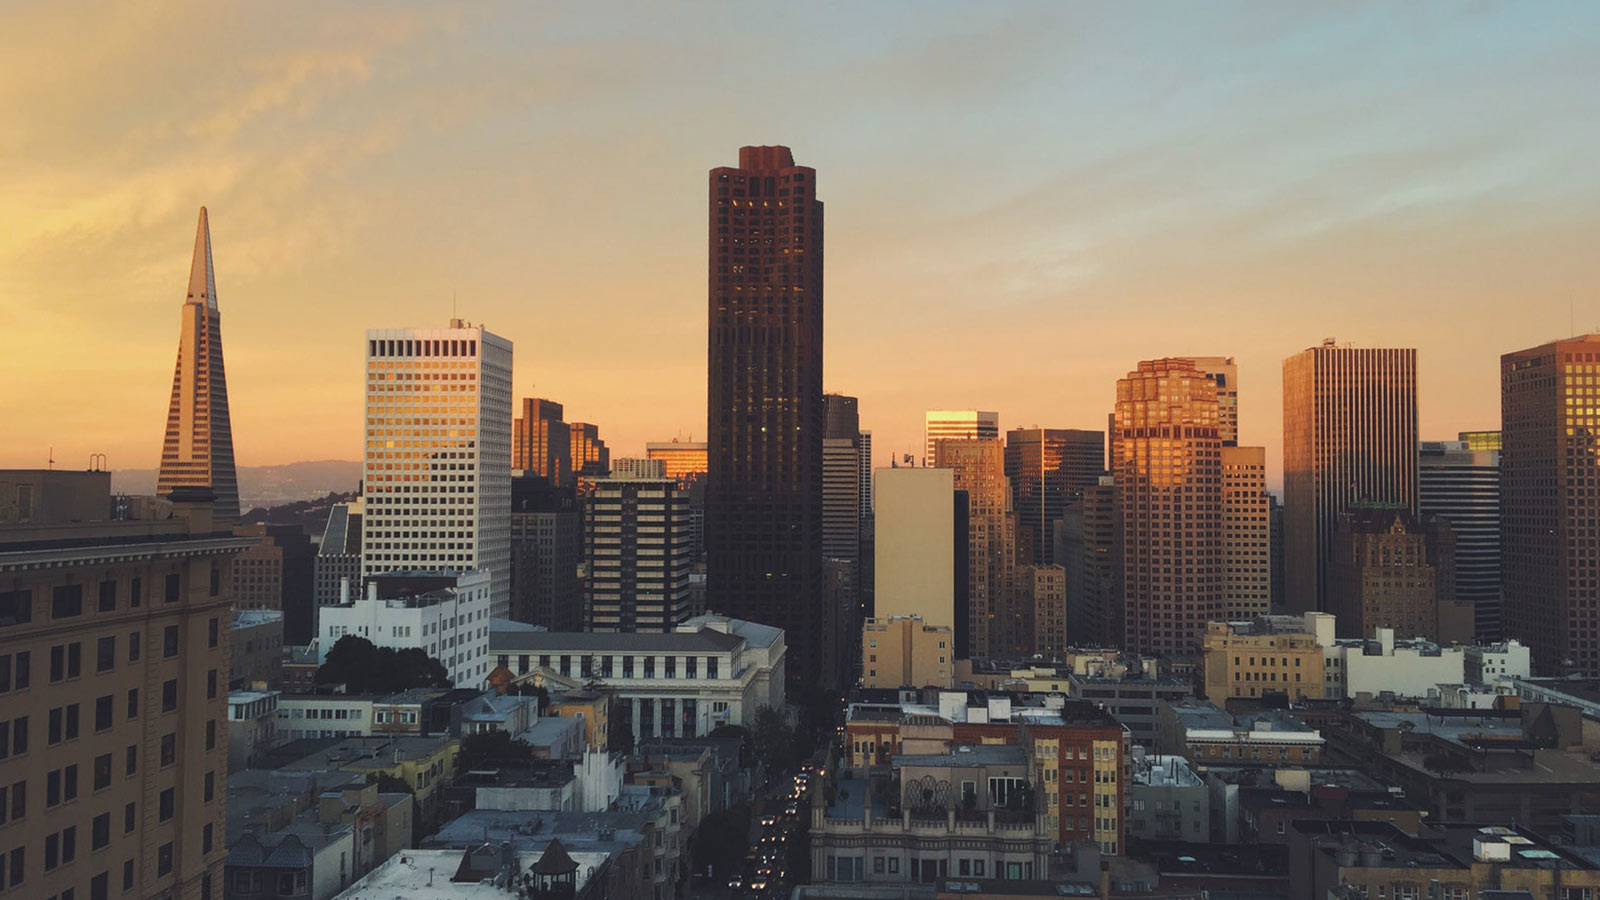 San Francisco skyline at sunrise.